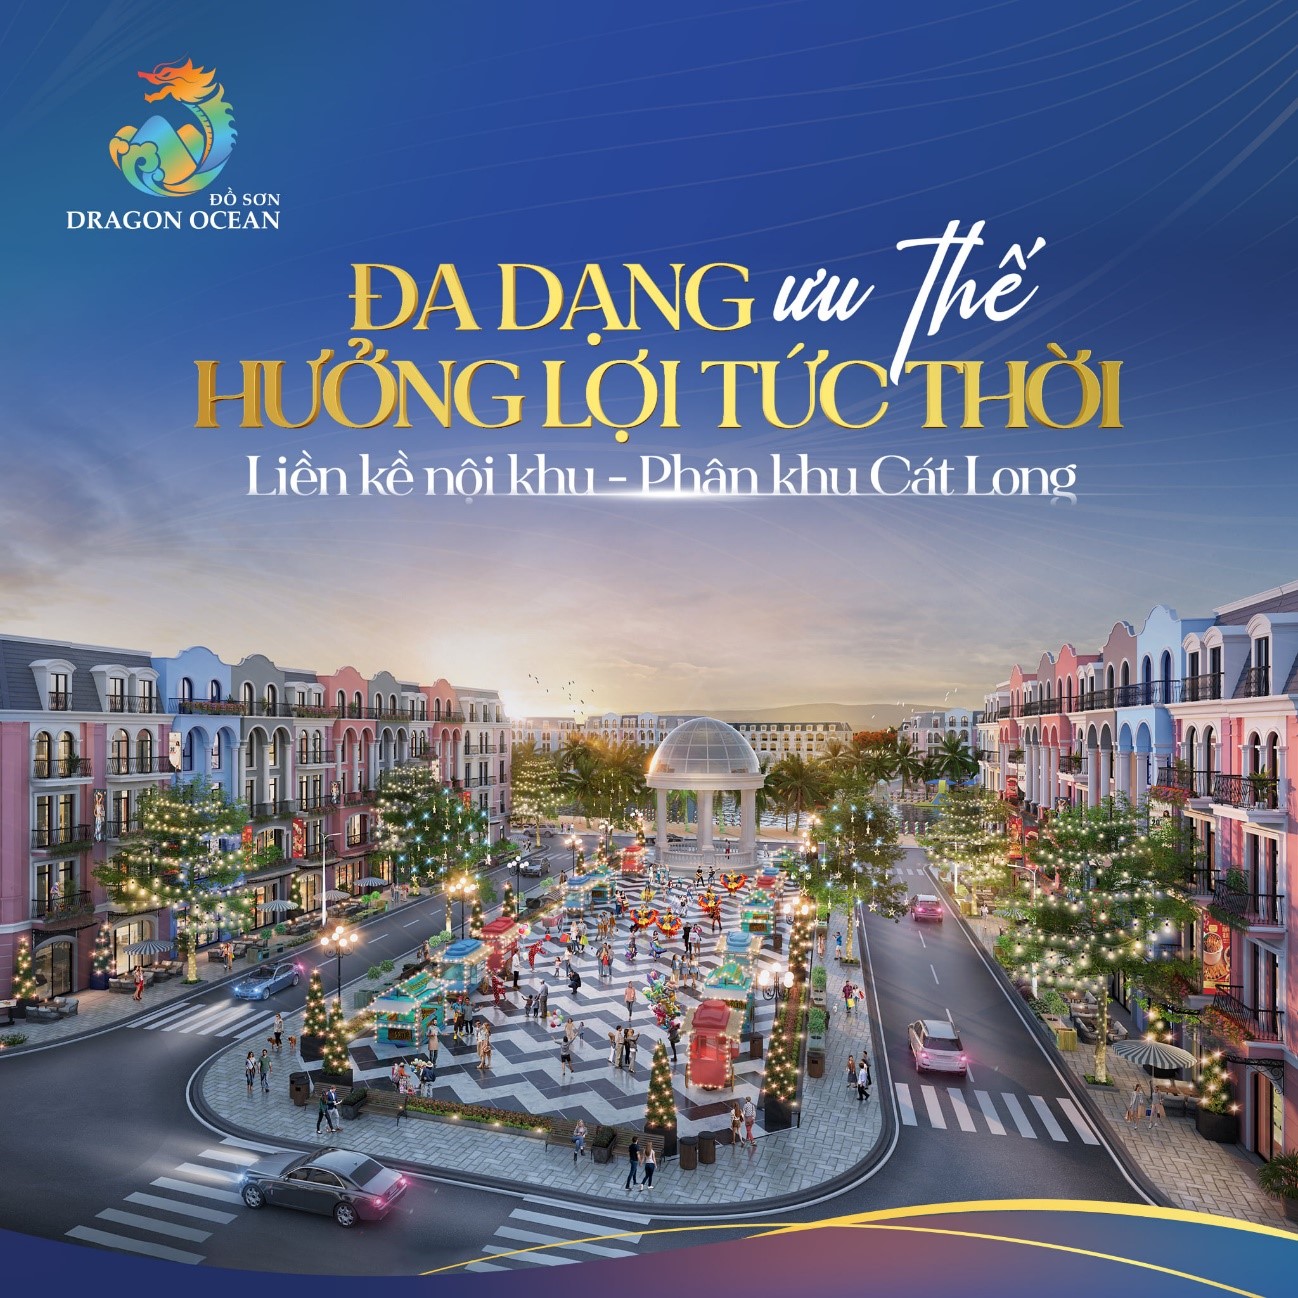 Phân khu Kim Long và Cát Long – điểm hẹn đầu tư kinh doanh, đón đầu mùa lễ hội sôi động nhất năm tại Hải Phòng.